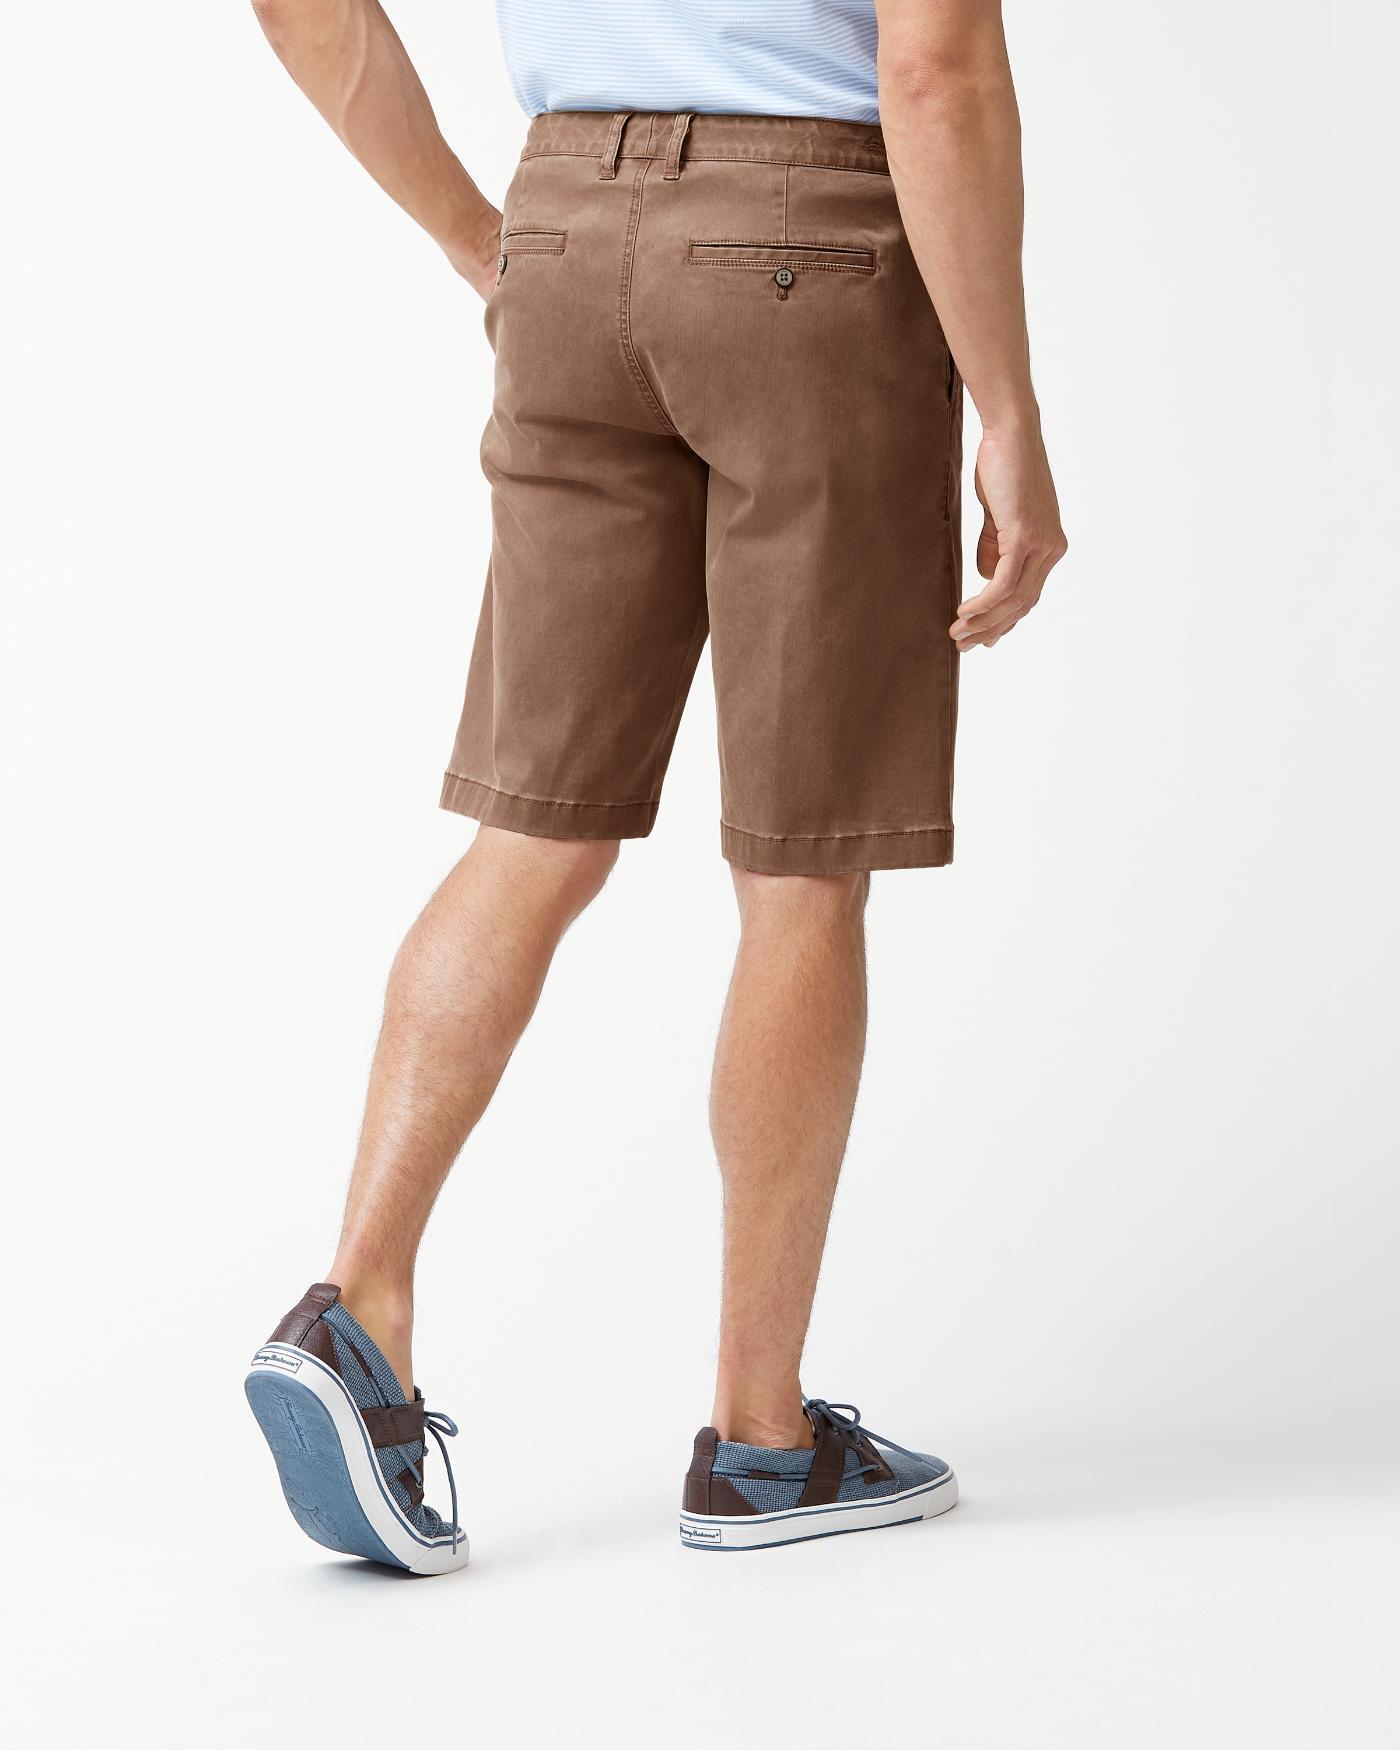 Boracay 12-inch Chino Shorts 